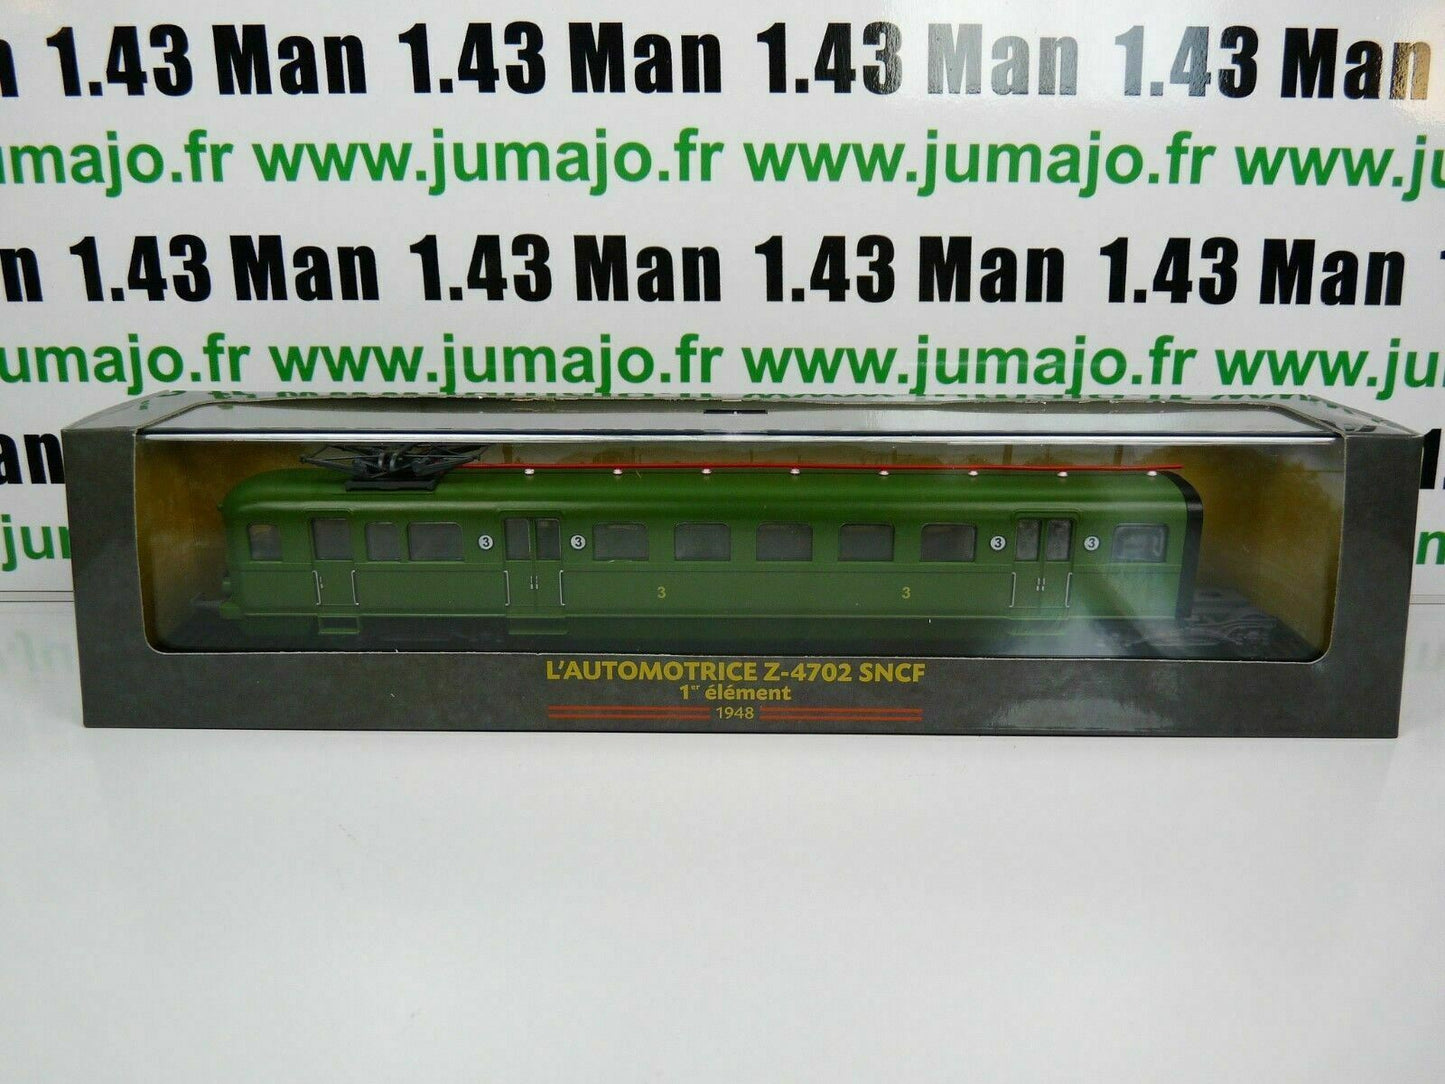 AM19 Automotrices train SNCF 1/87 HO : Z 4702 1948 1° élément